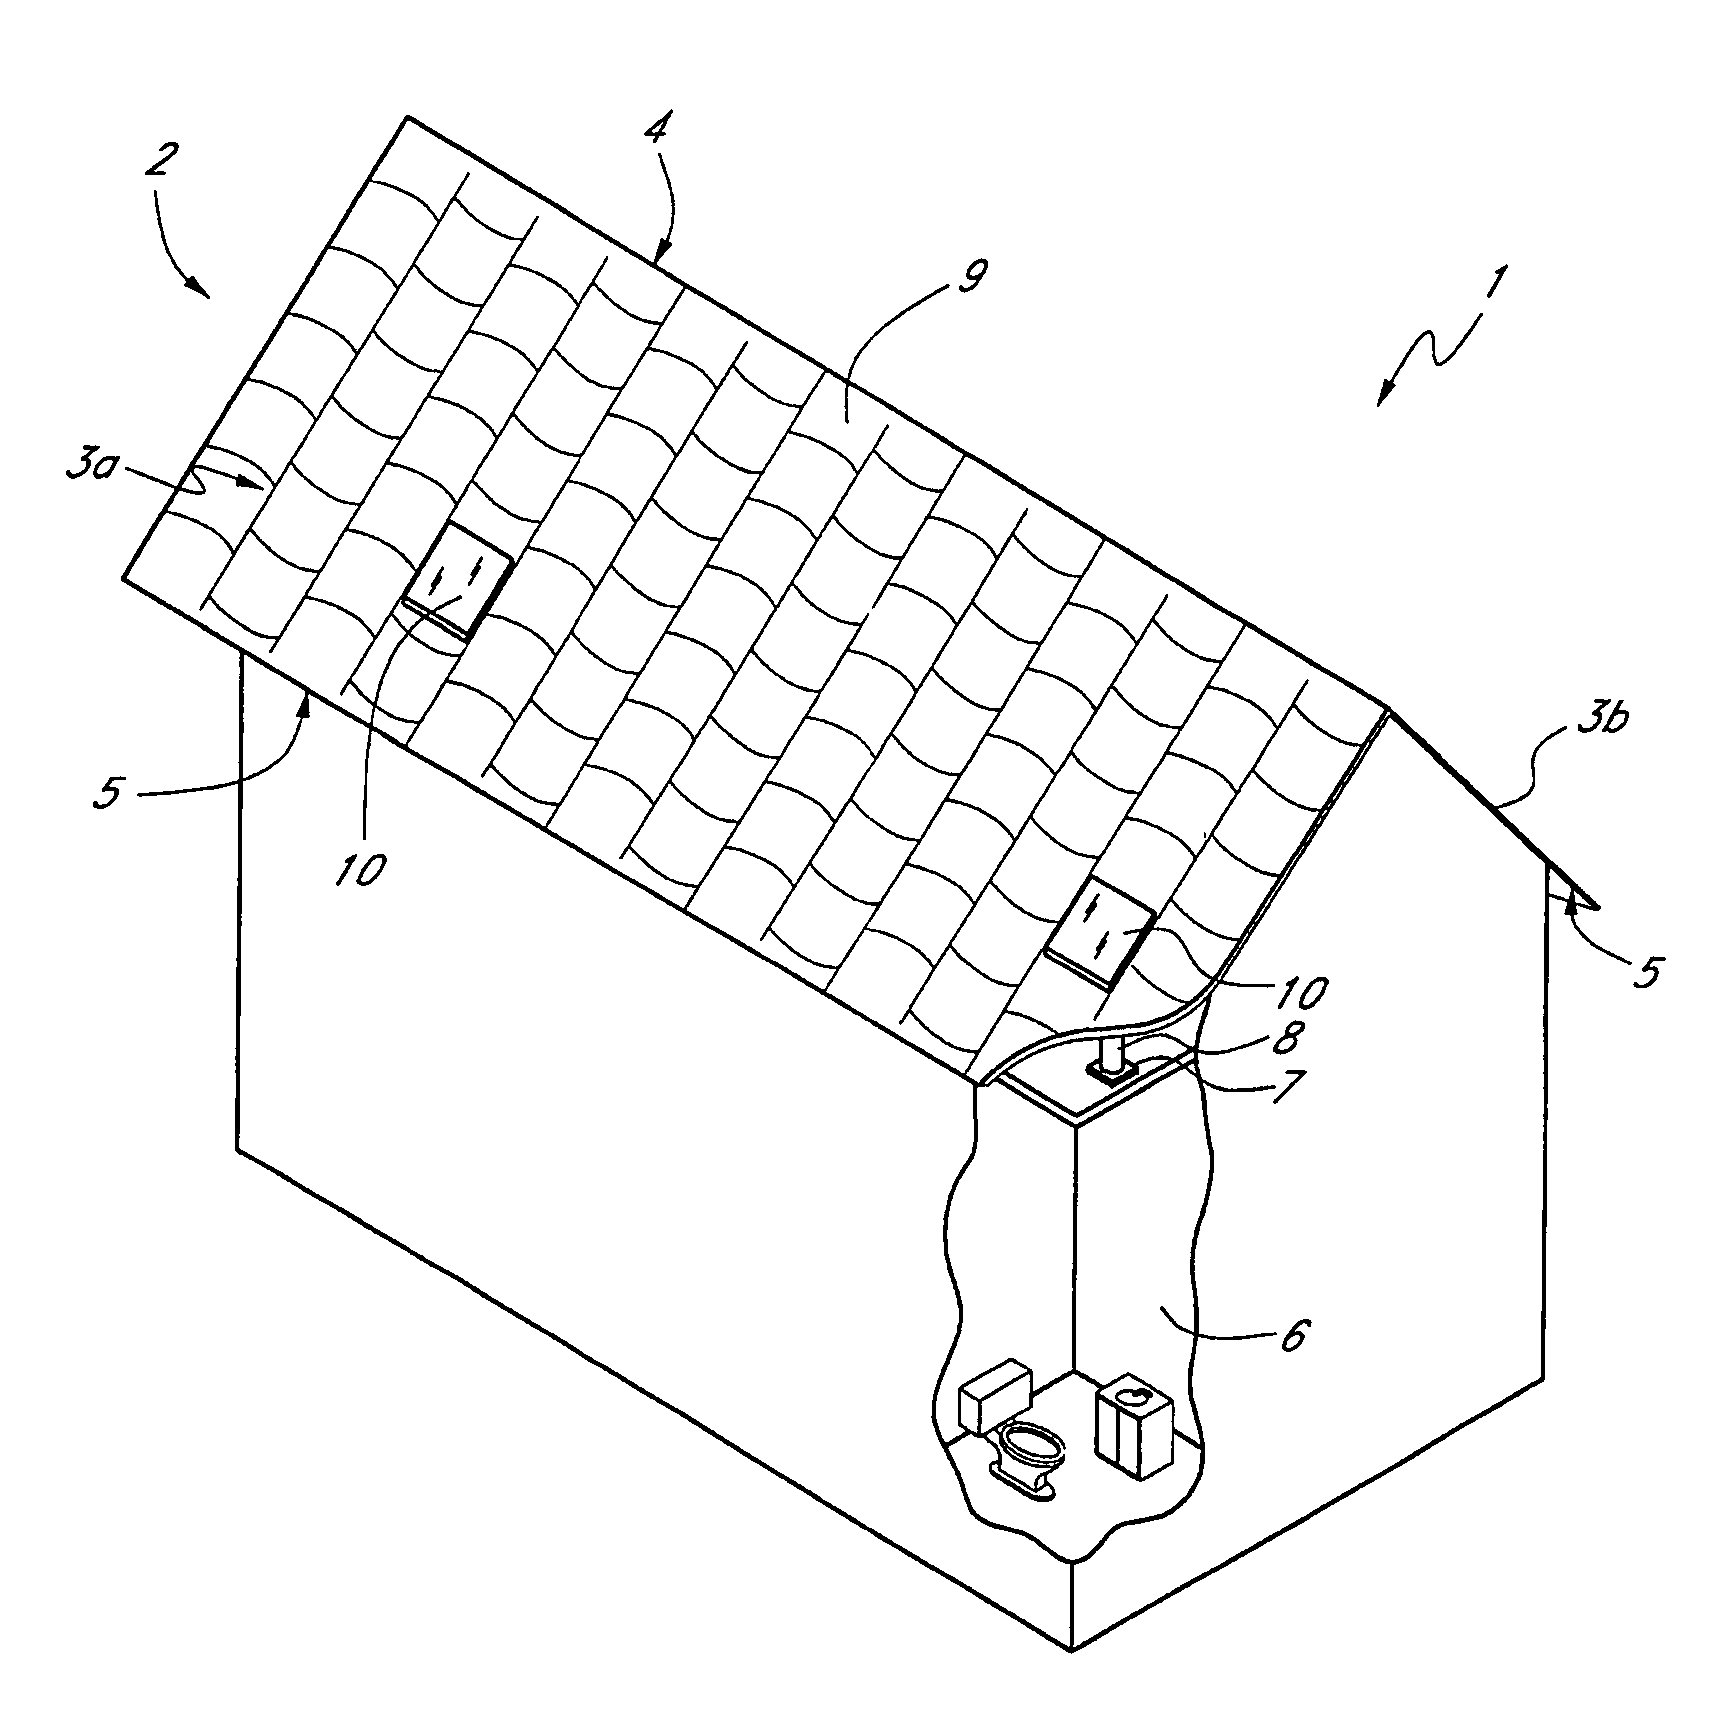 Hybrid metal-plastic roof vent